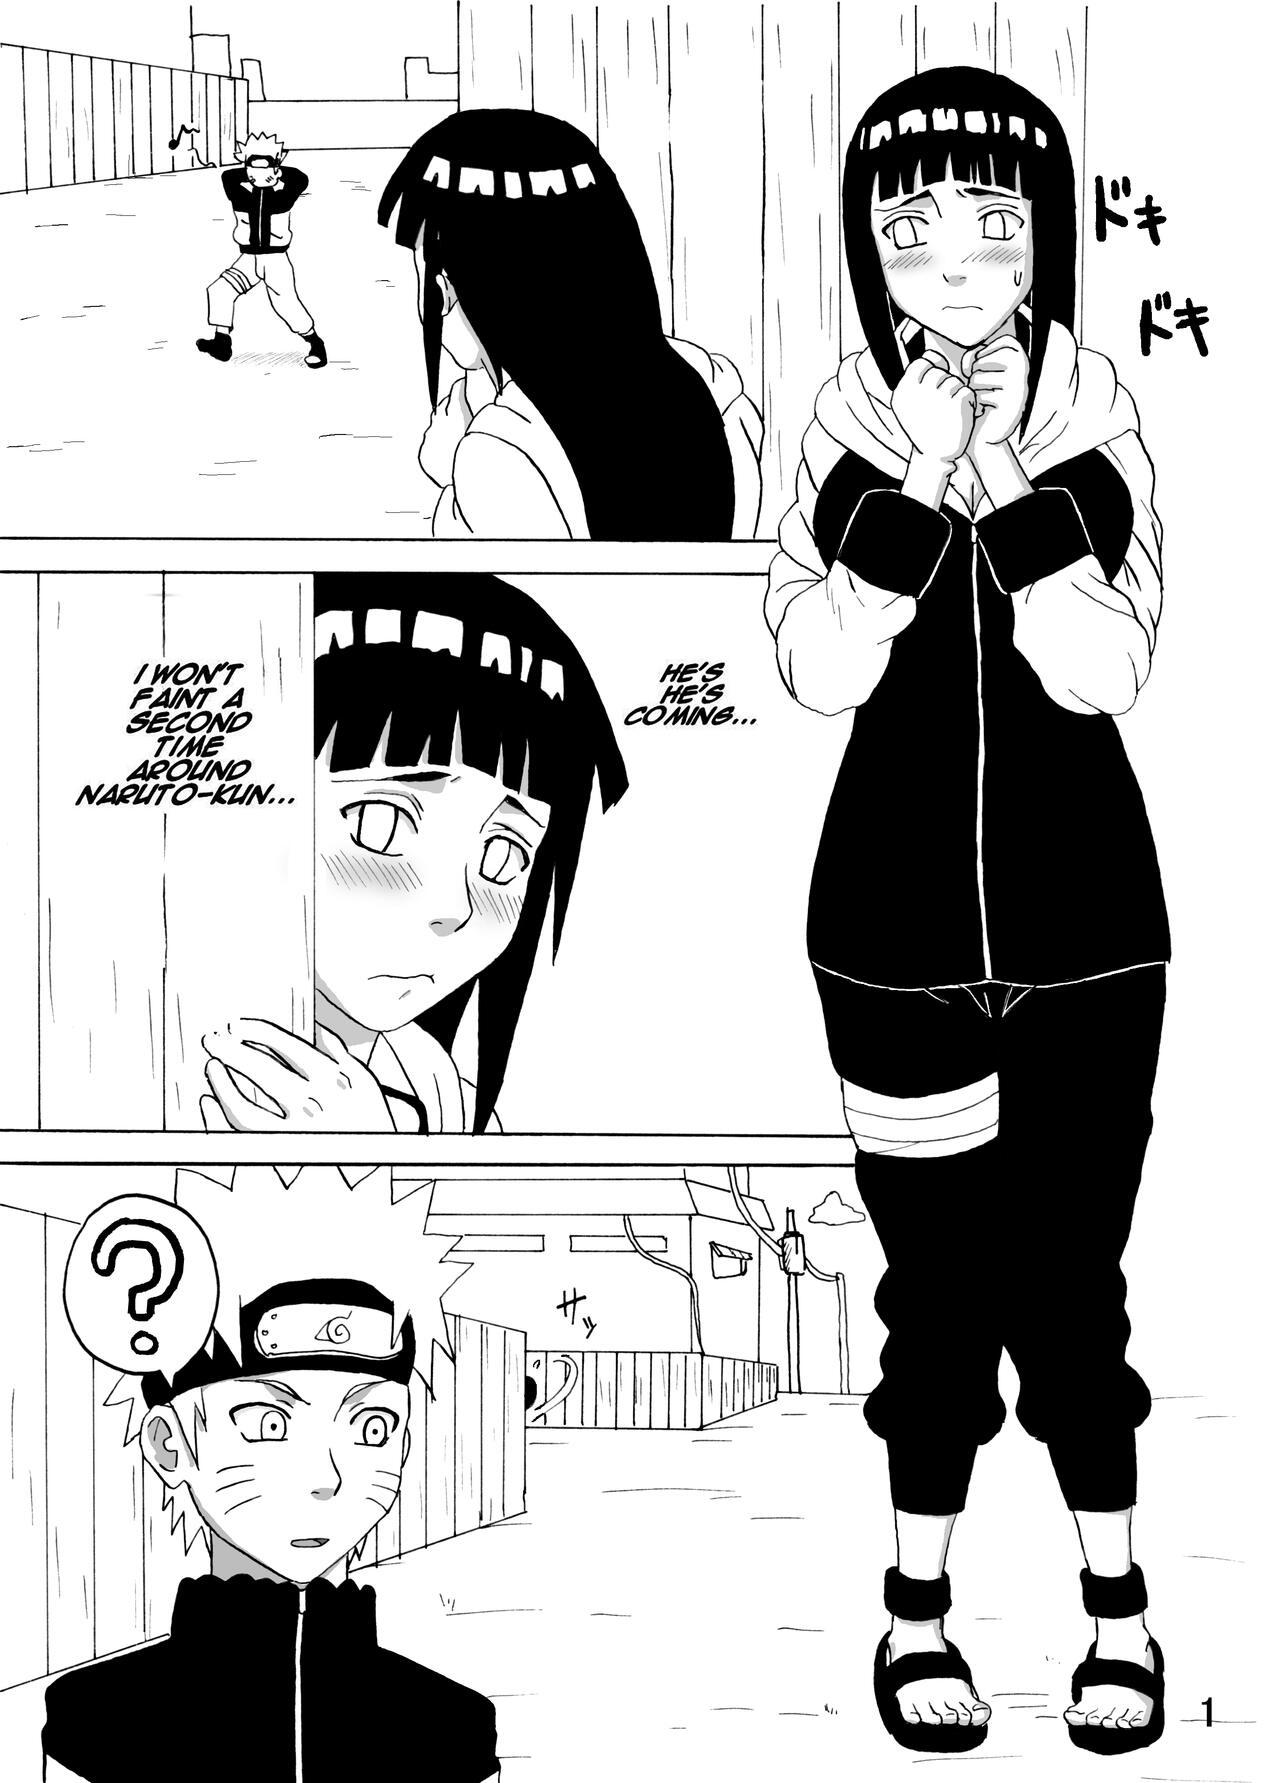 Double Penetration Hinata Ganbaru! | Hinata Fight! - Naruto Tinytits - Page 2